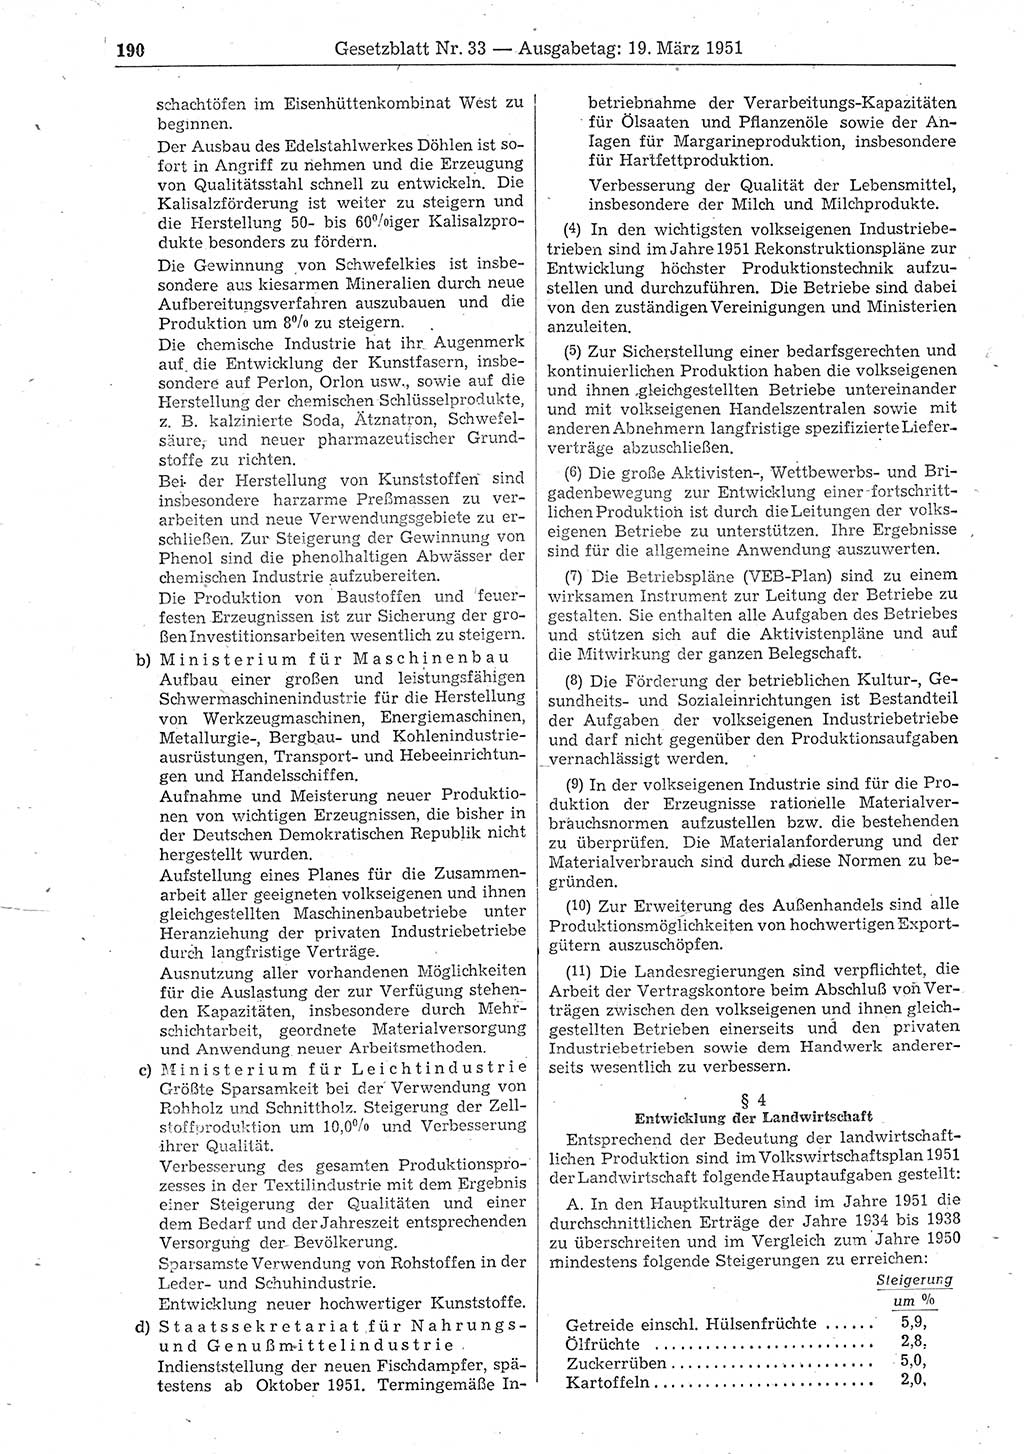 Gesetzblatt (GBl.) der Deutschen Demokratischen Republik (DDR) 1951, Seite 190 (GBl. DDR 1951, S. 190)